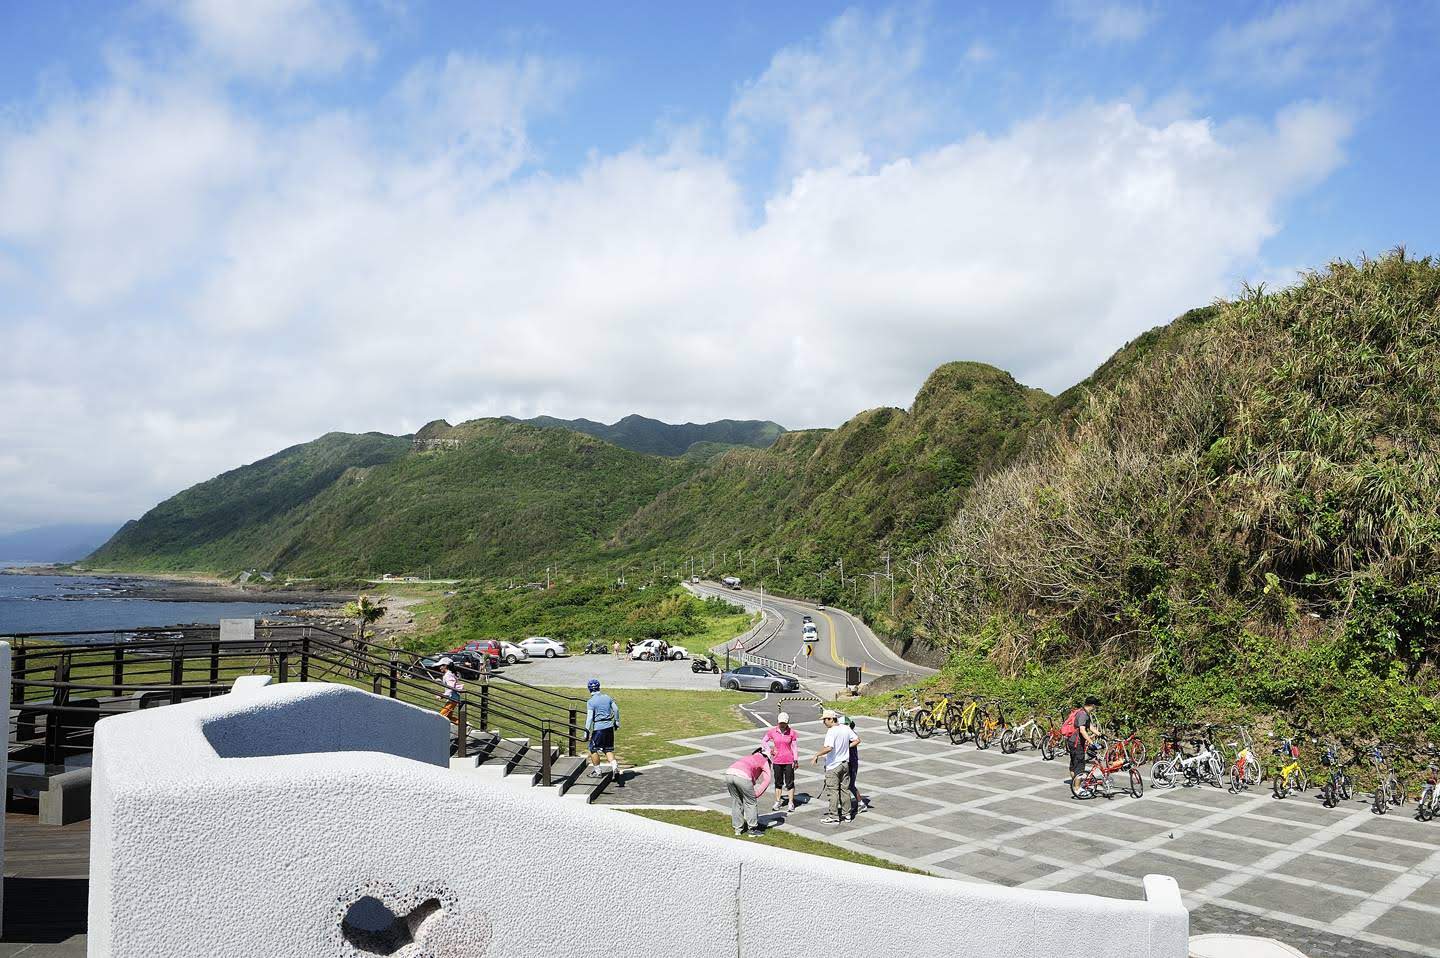 대만 북동쪽에서 열리는 2019 세계 사이클링 데이